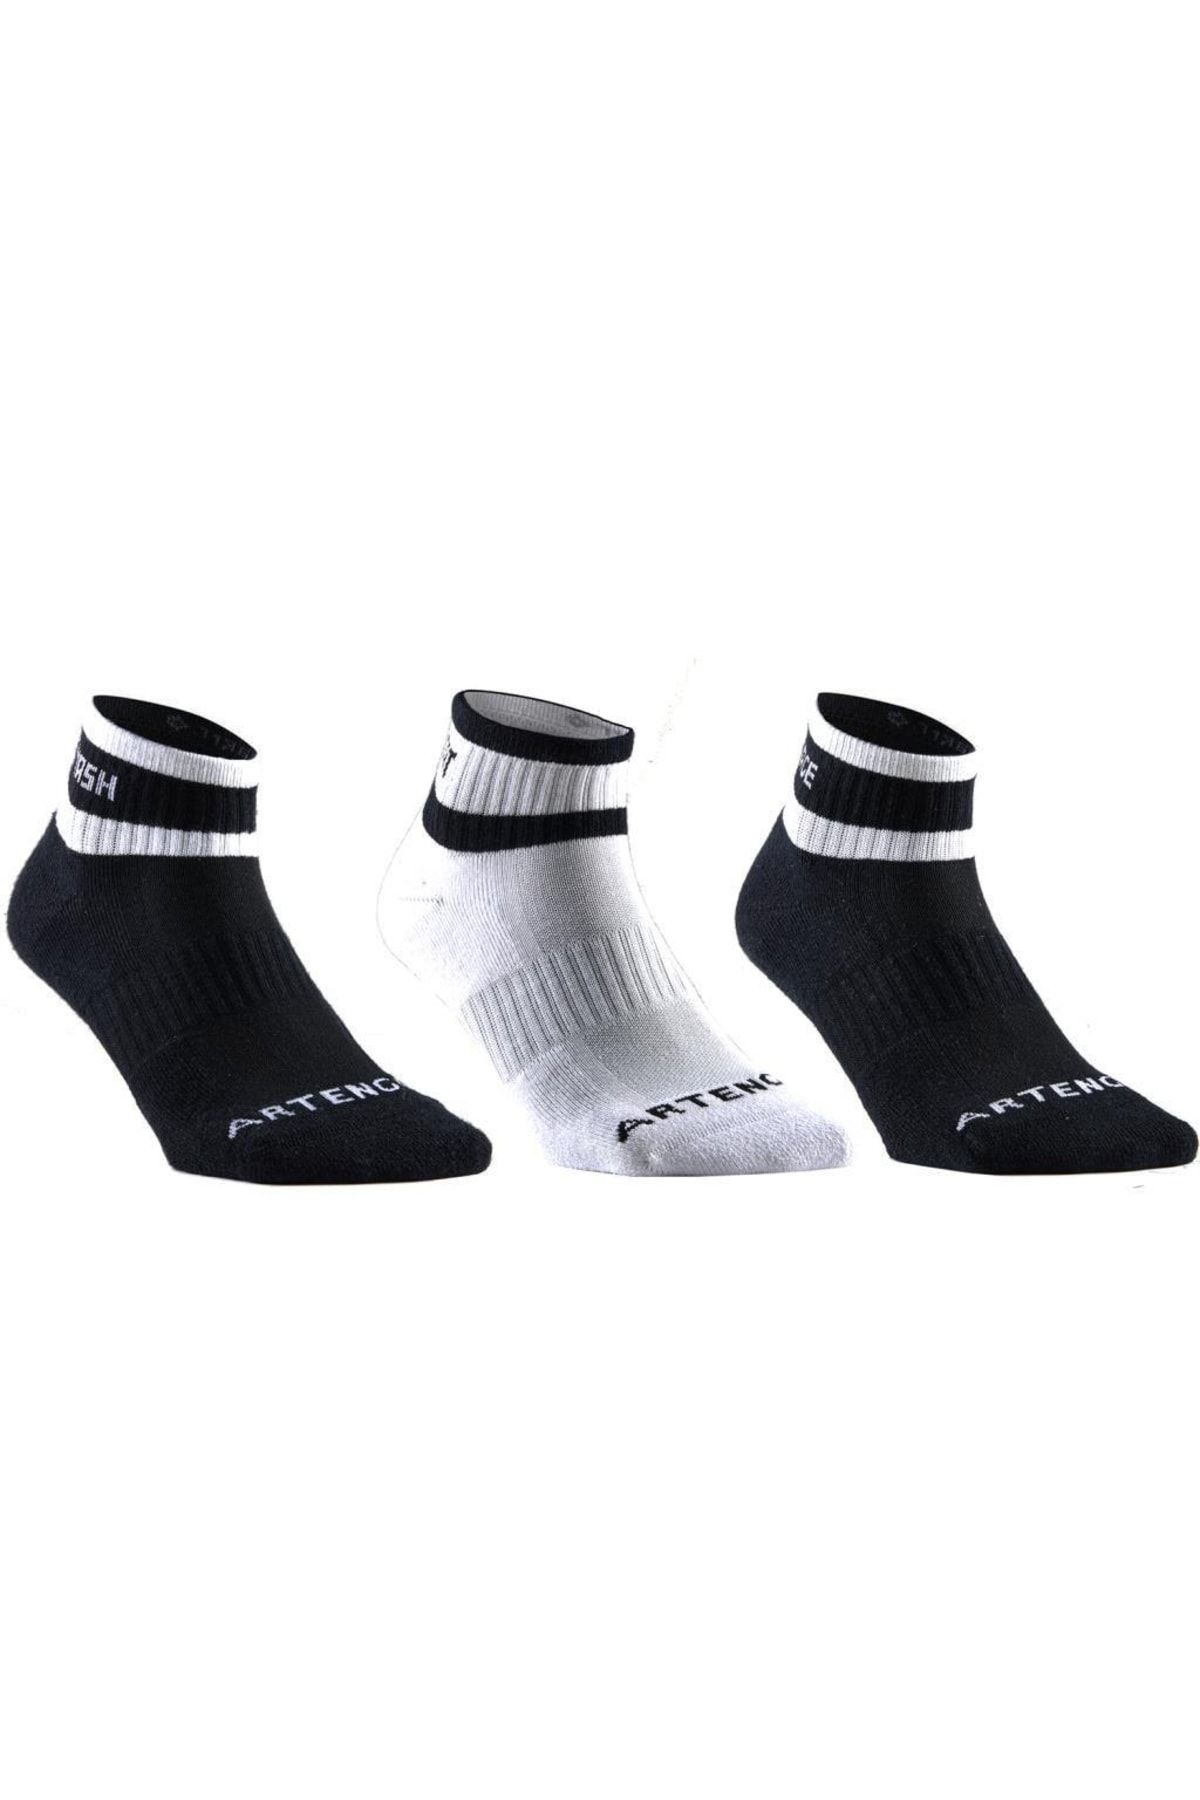 Telvesse Spor Çorap Orta Konçlu Kışlık Çorap Havlu Yapılı Siyah-beyaz Şeritli 3 Çift